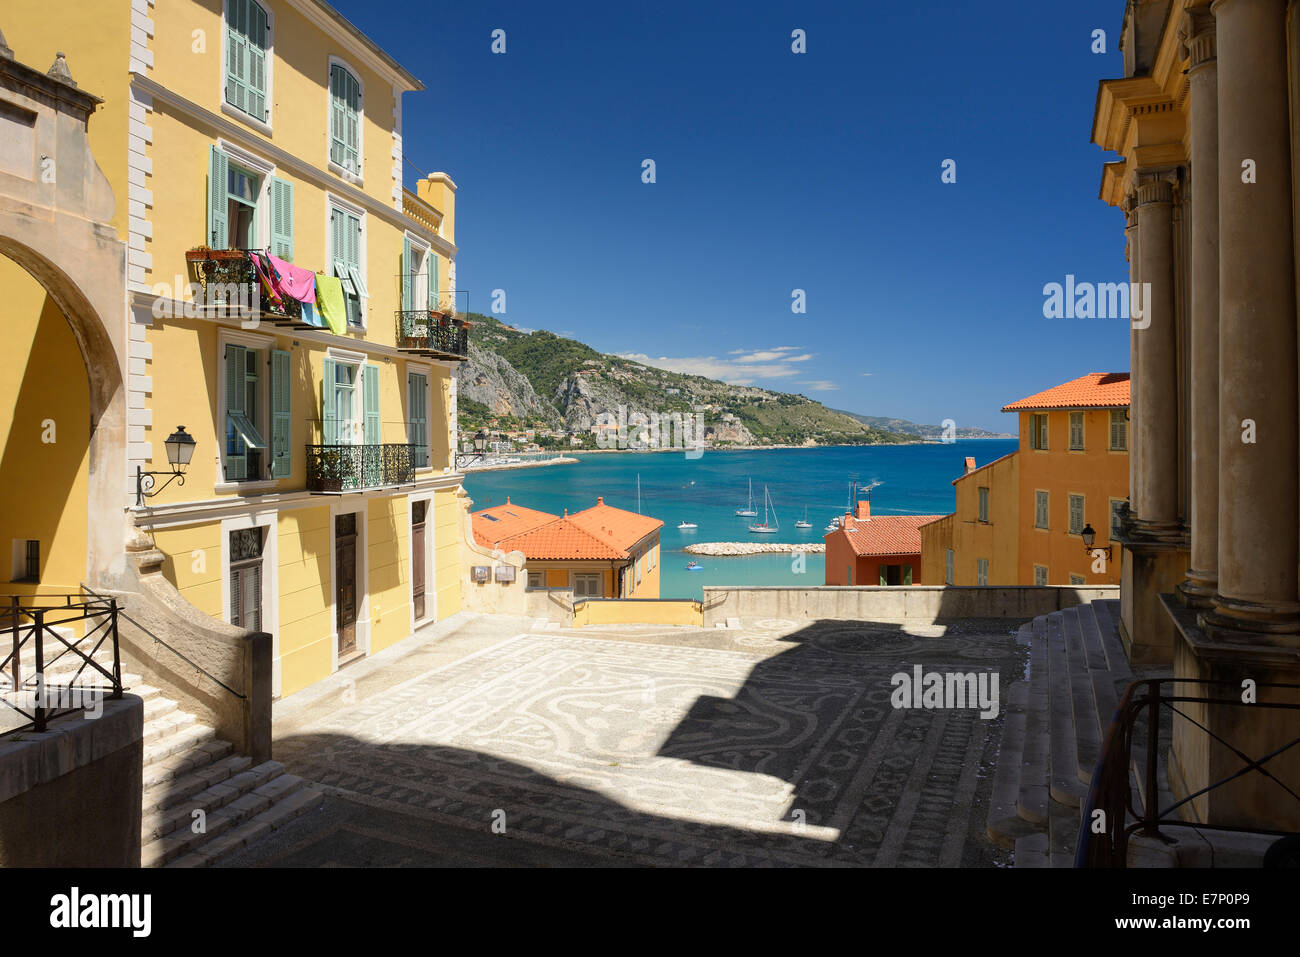 Europa, Frankreich, Cote d ' Azur, Menton, Altstadt, Riviera, Stadt, Architektur, Fassade, quadratisch, mediterran Stockfoto